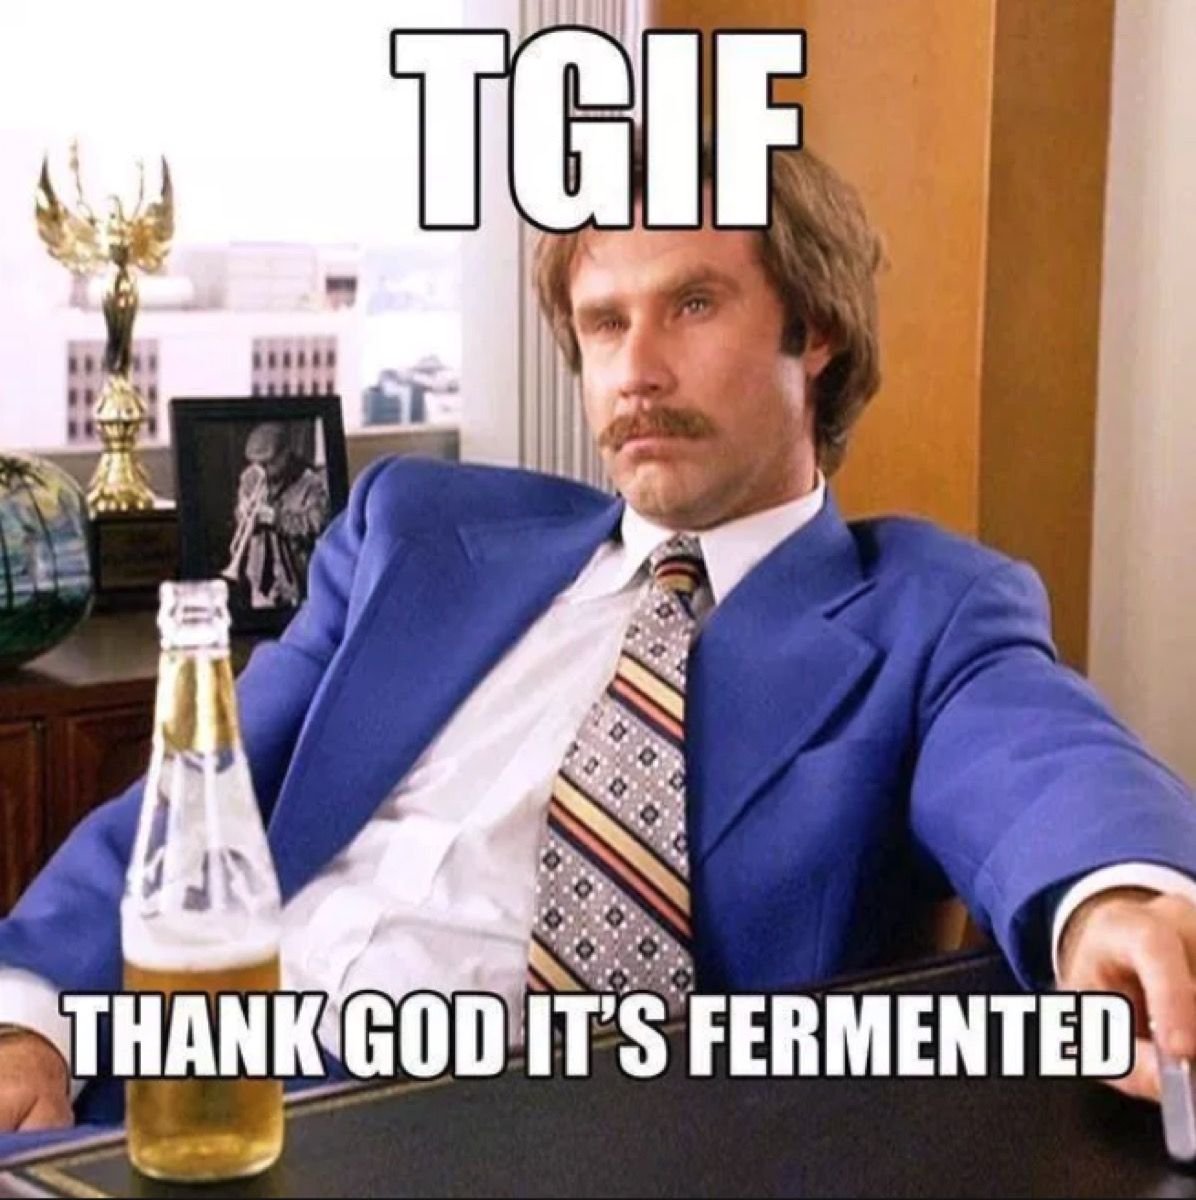 tgif meme hvala bogu njegovo fermentirano